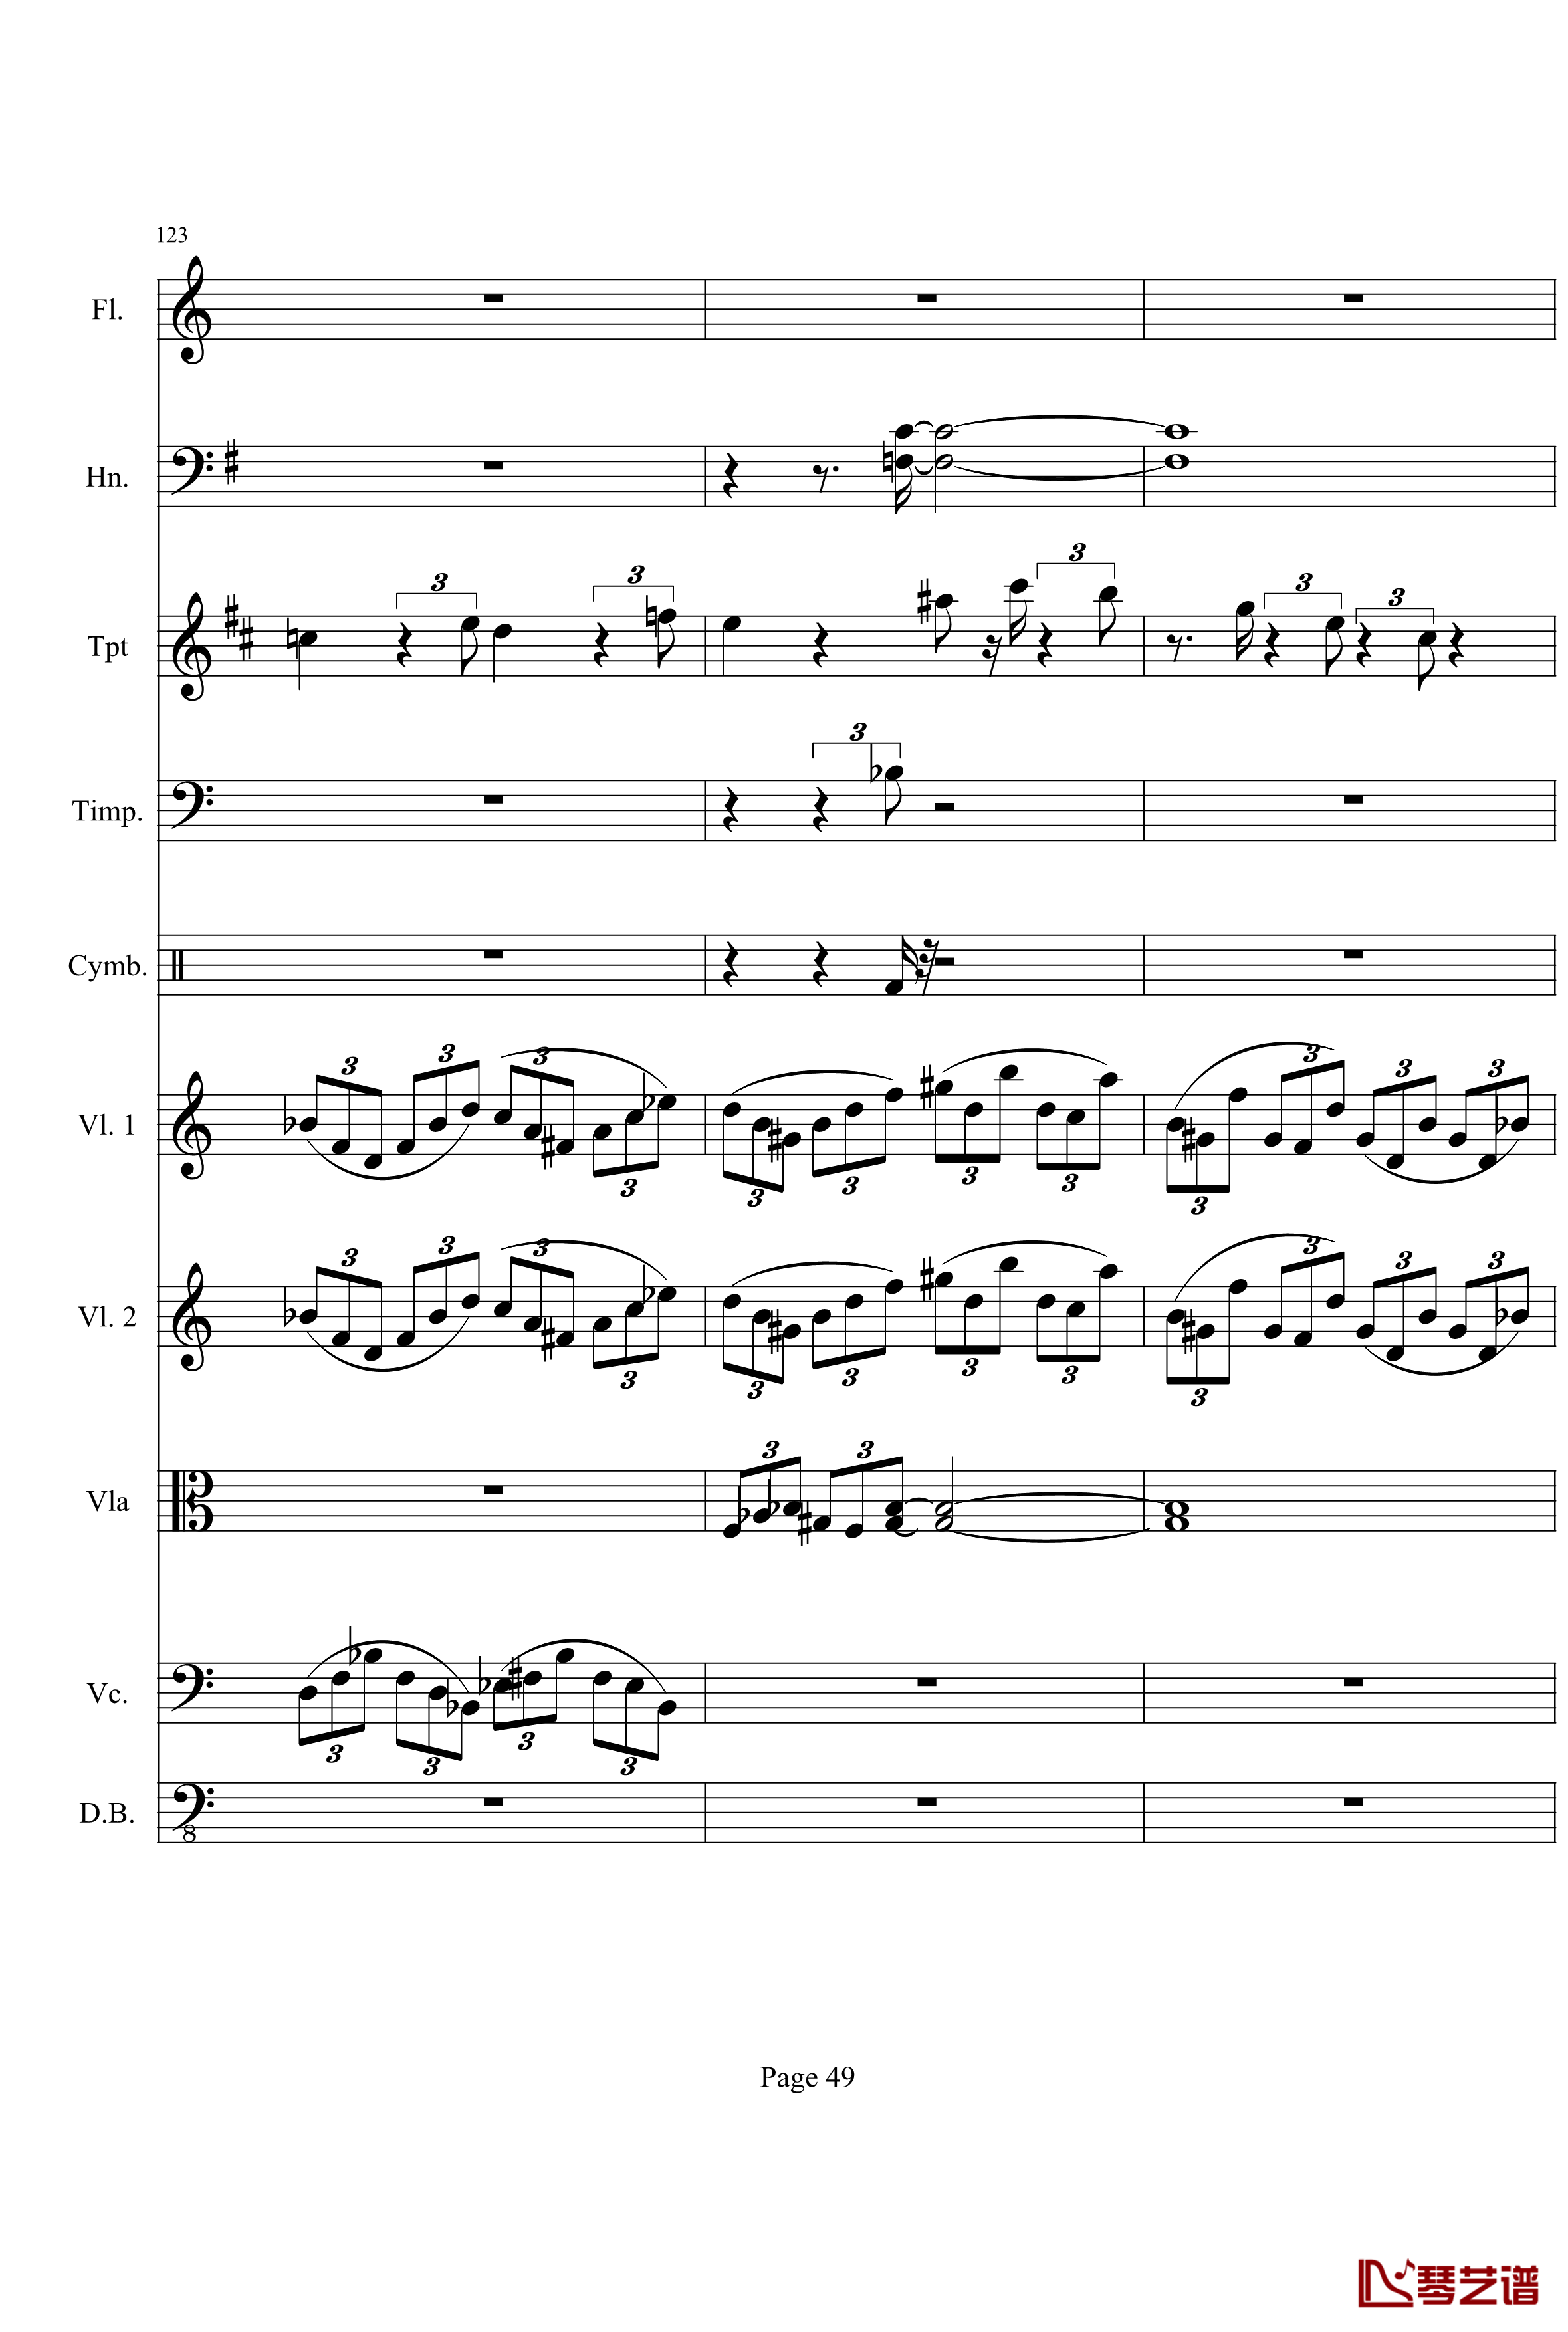 奏鸣曲之交响钢琴谱-第21-Ⅰ-贝多芬-beethoven49